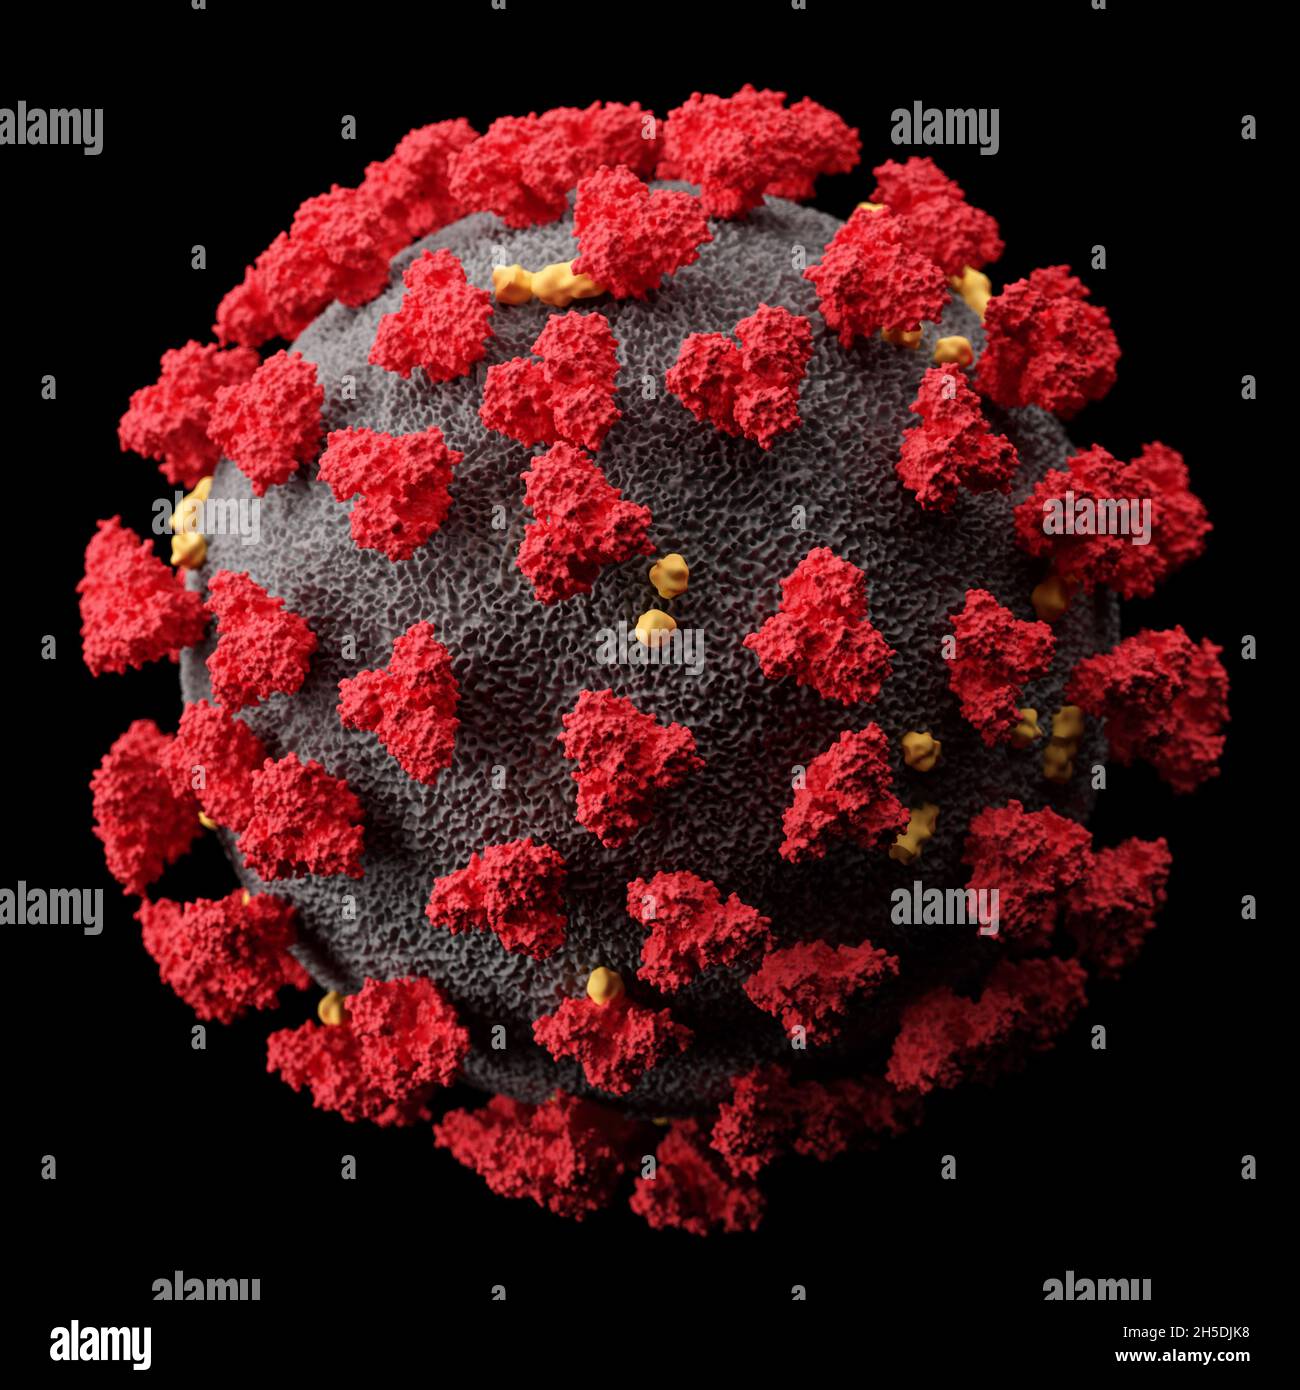 Visualizzazione del virus SARS-COV-2 (COVID19). Illustrazione del patogeno del coronavirus al microscopio. Isolato su sfondo nero. rendering 3d Foto Stock